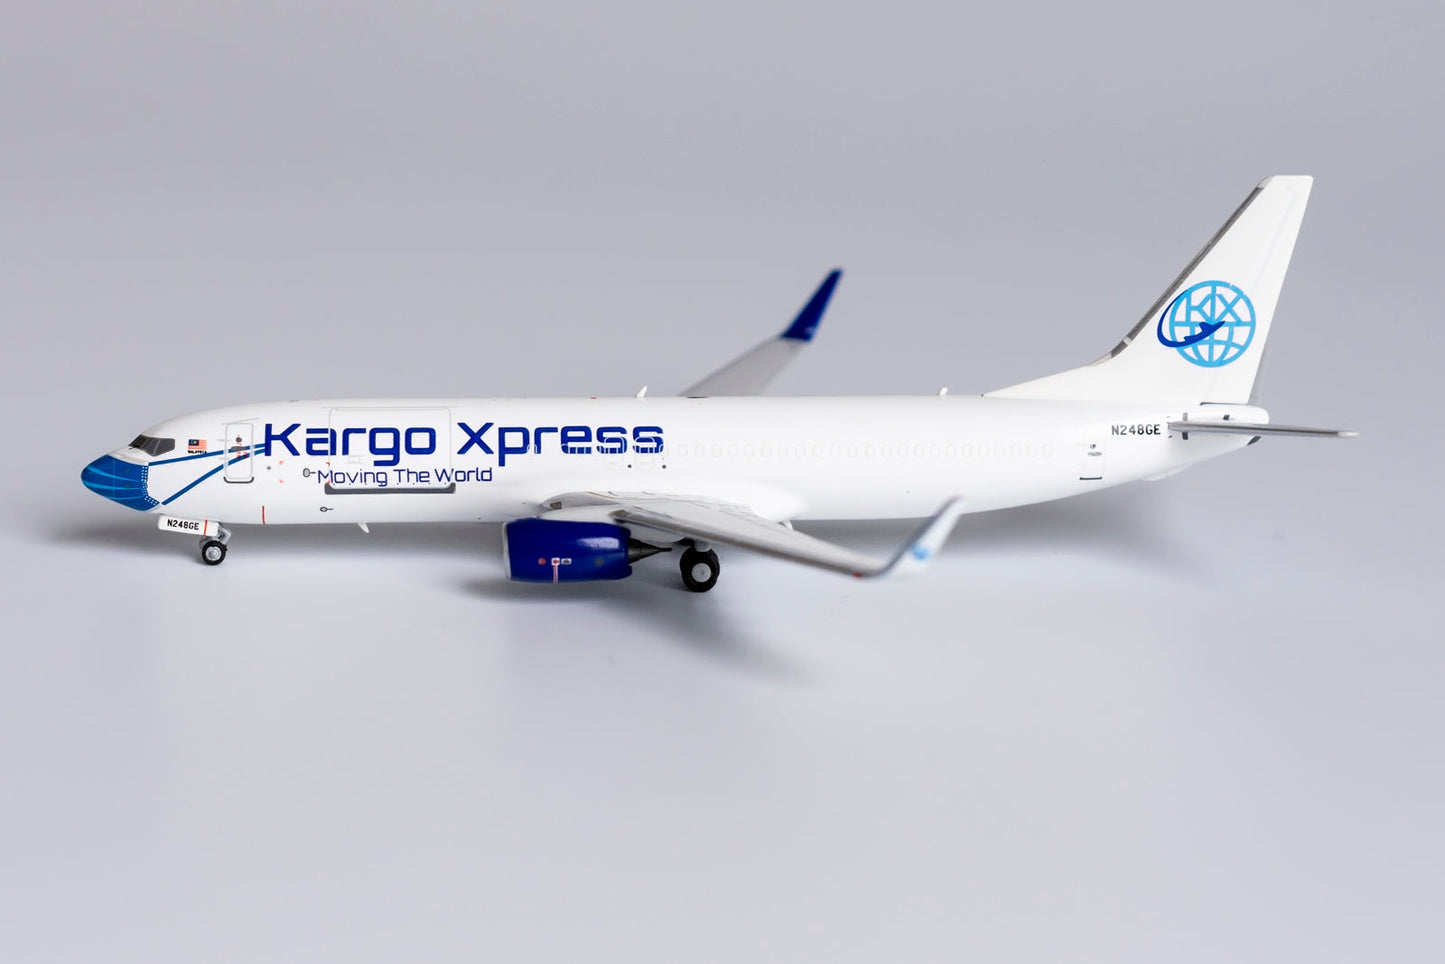 *1/400 Kargo Xpress B 737-800/w "Face Mask Livery" NG Models 58126